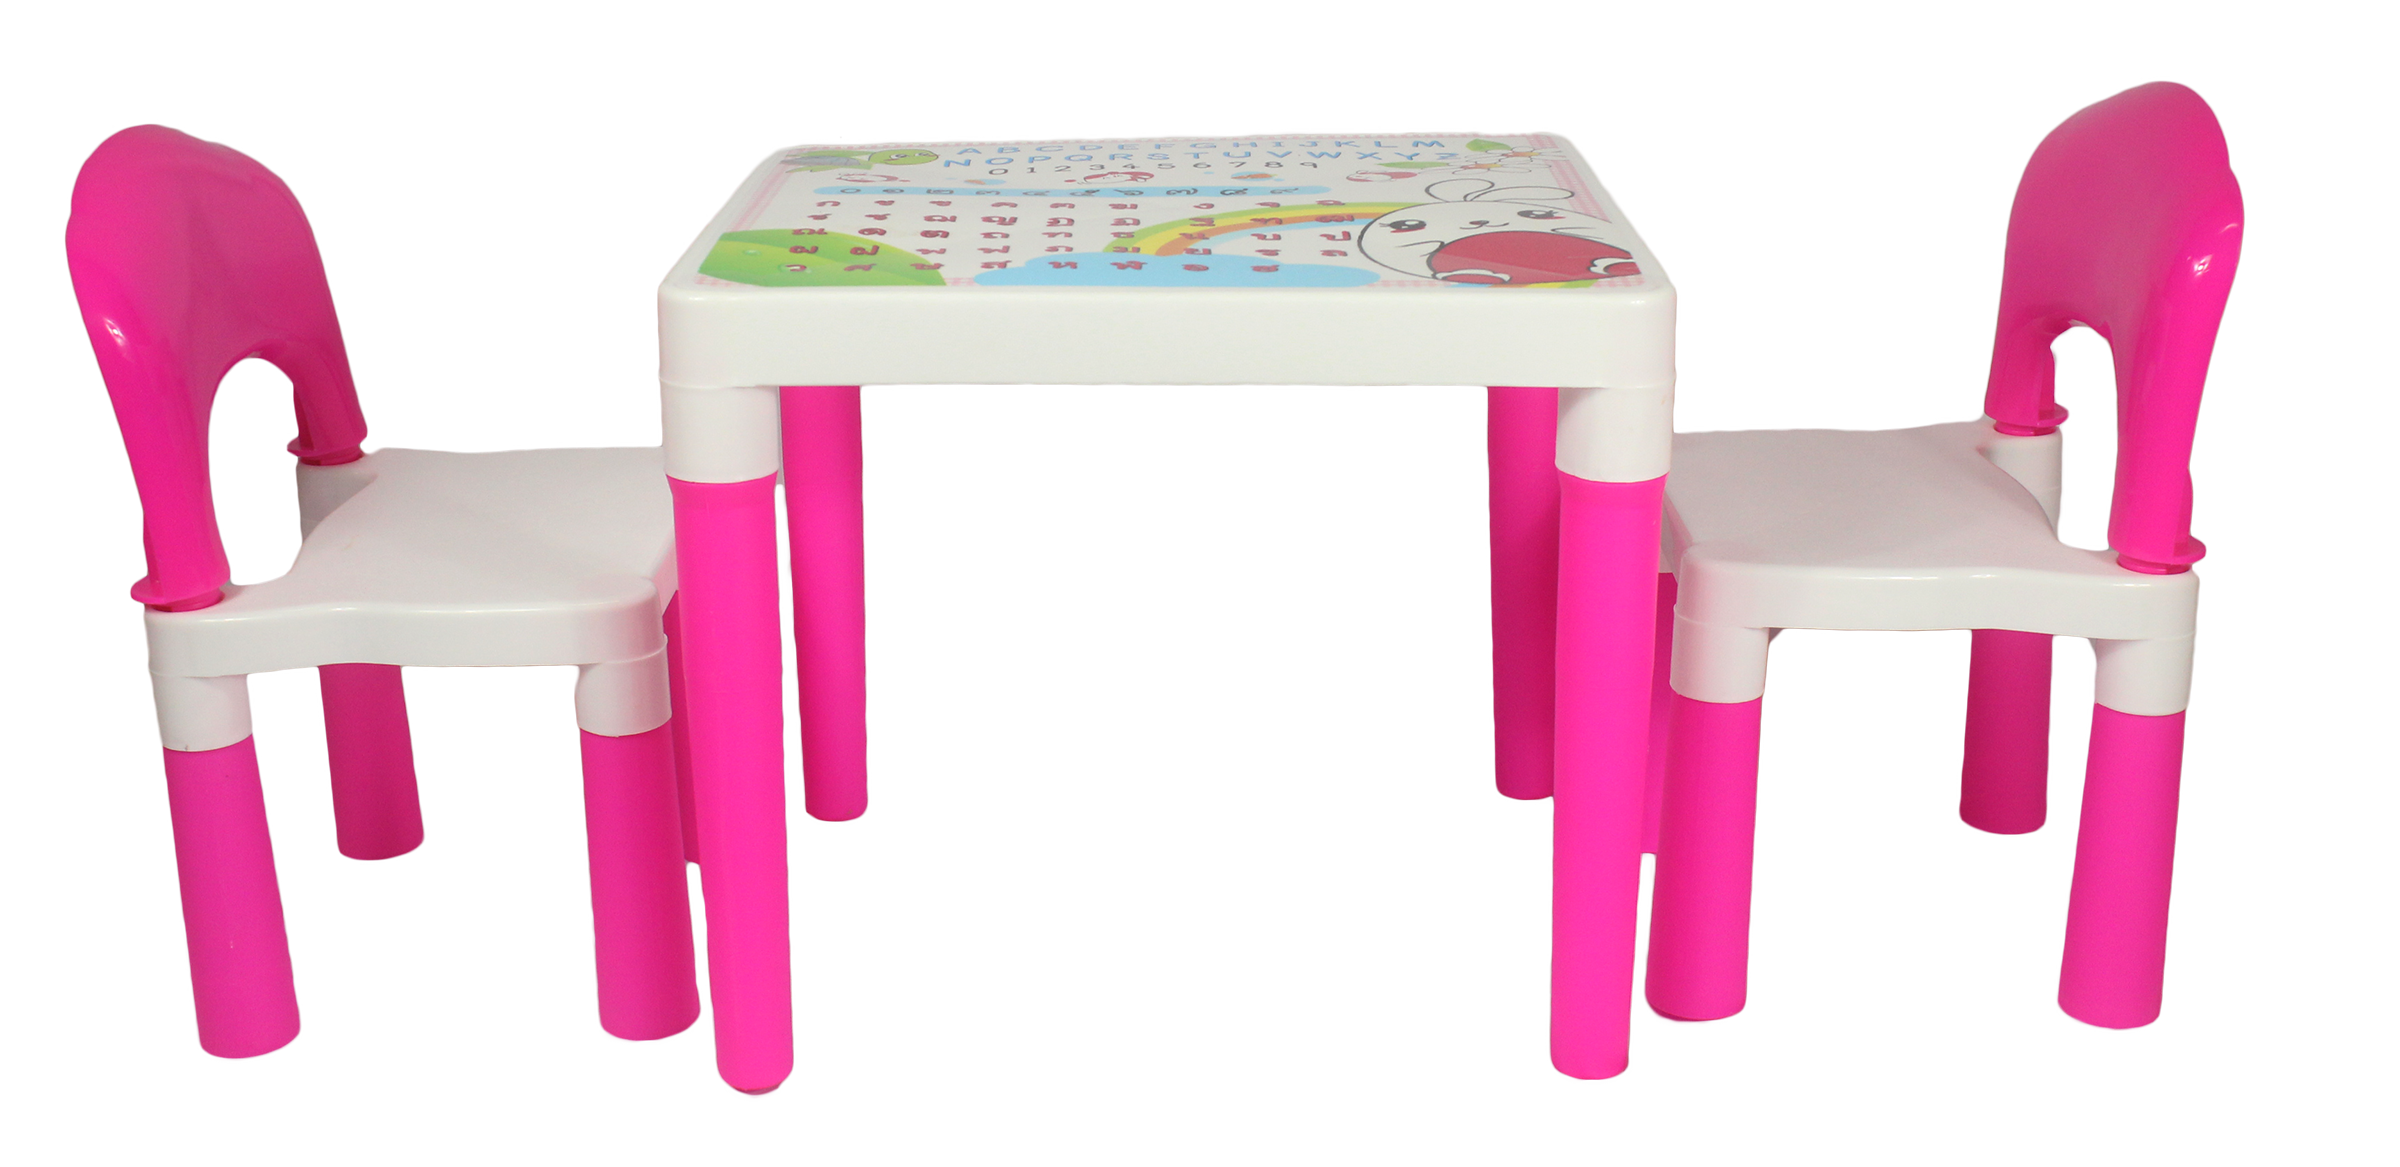 ชุดโต๊ะเก้าอี้เด็กมีลาย ก-ฮ และ A-Z รุ่น FAMILY SET (โต๊ะ 1 ตัว + เก้าอี้ 2 ตัว ใน 1 ชุด) สินค้าดีราคาถูก